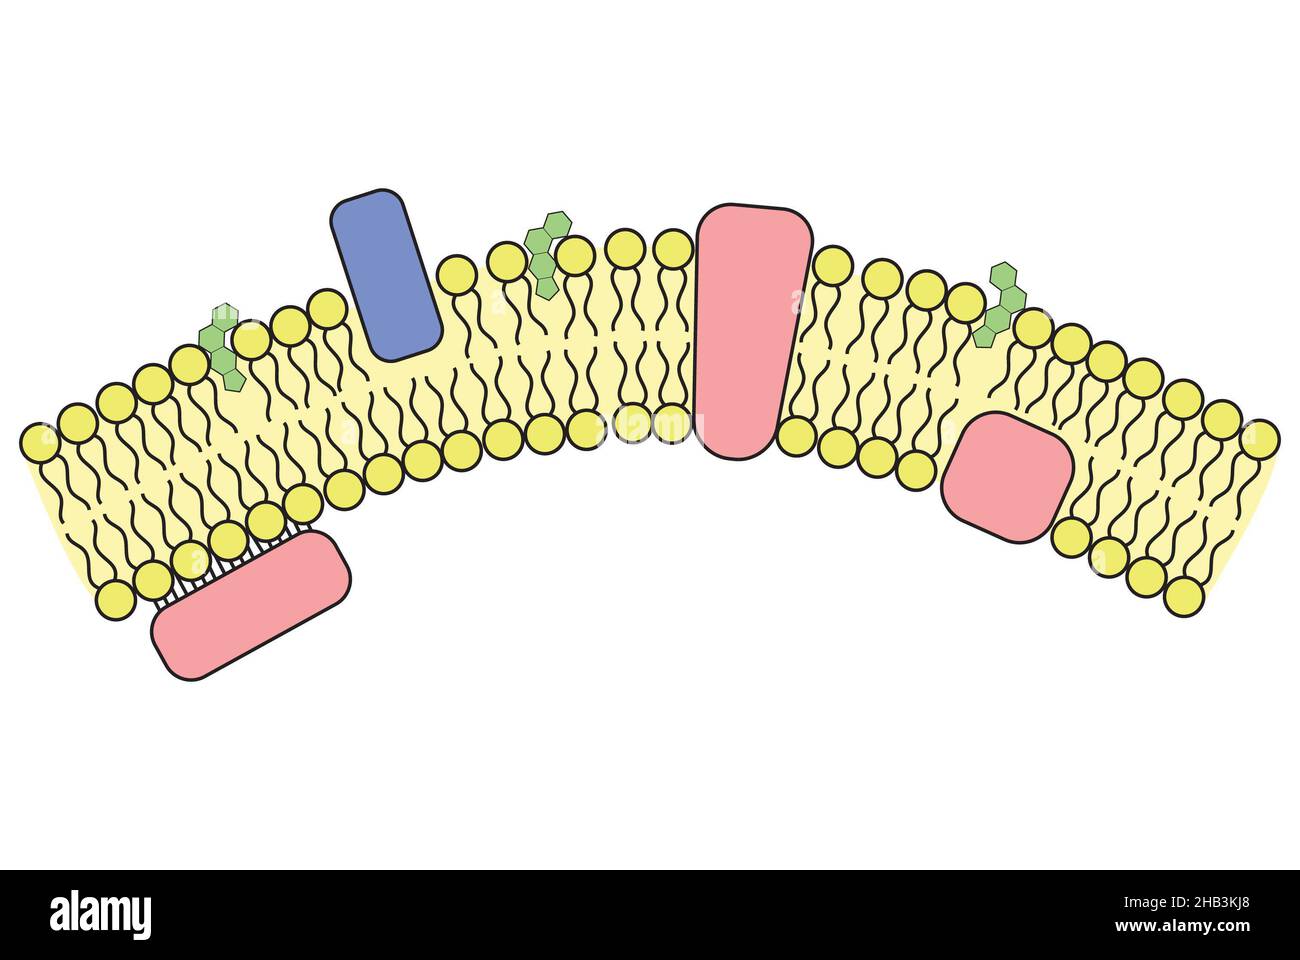 Proteine di membrana immagini e fotografie stock ad alta risoluzione - Alamy